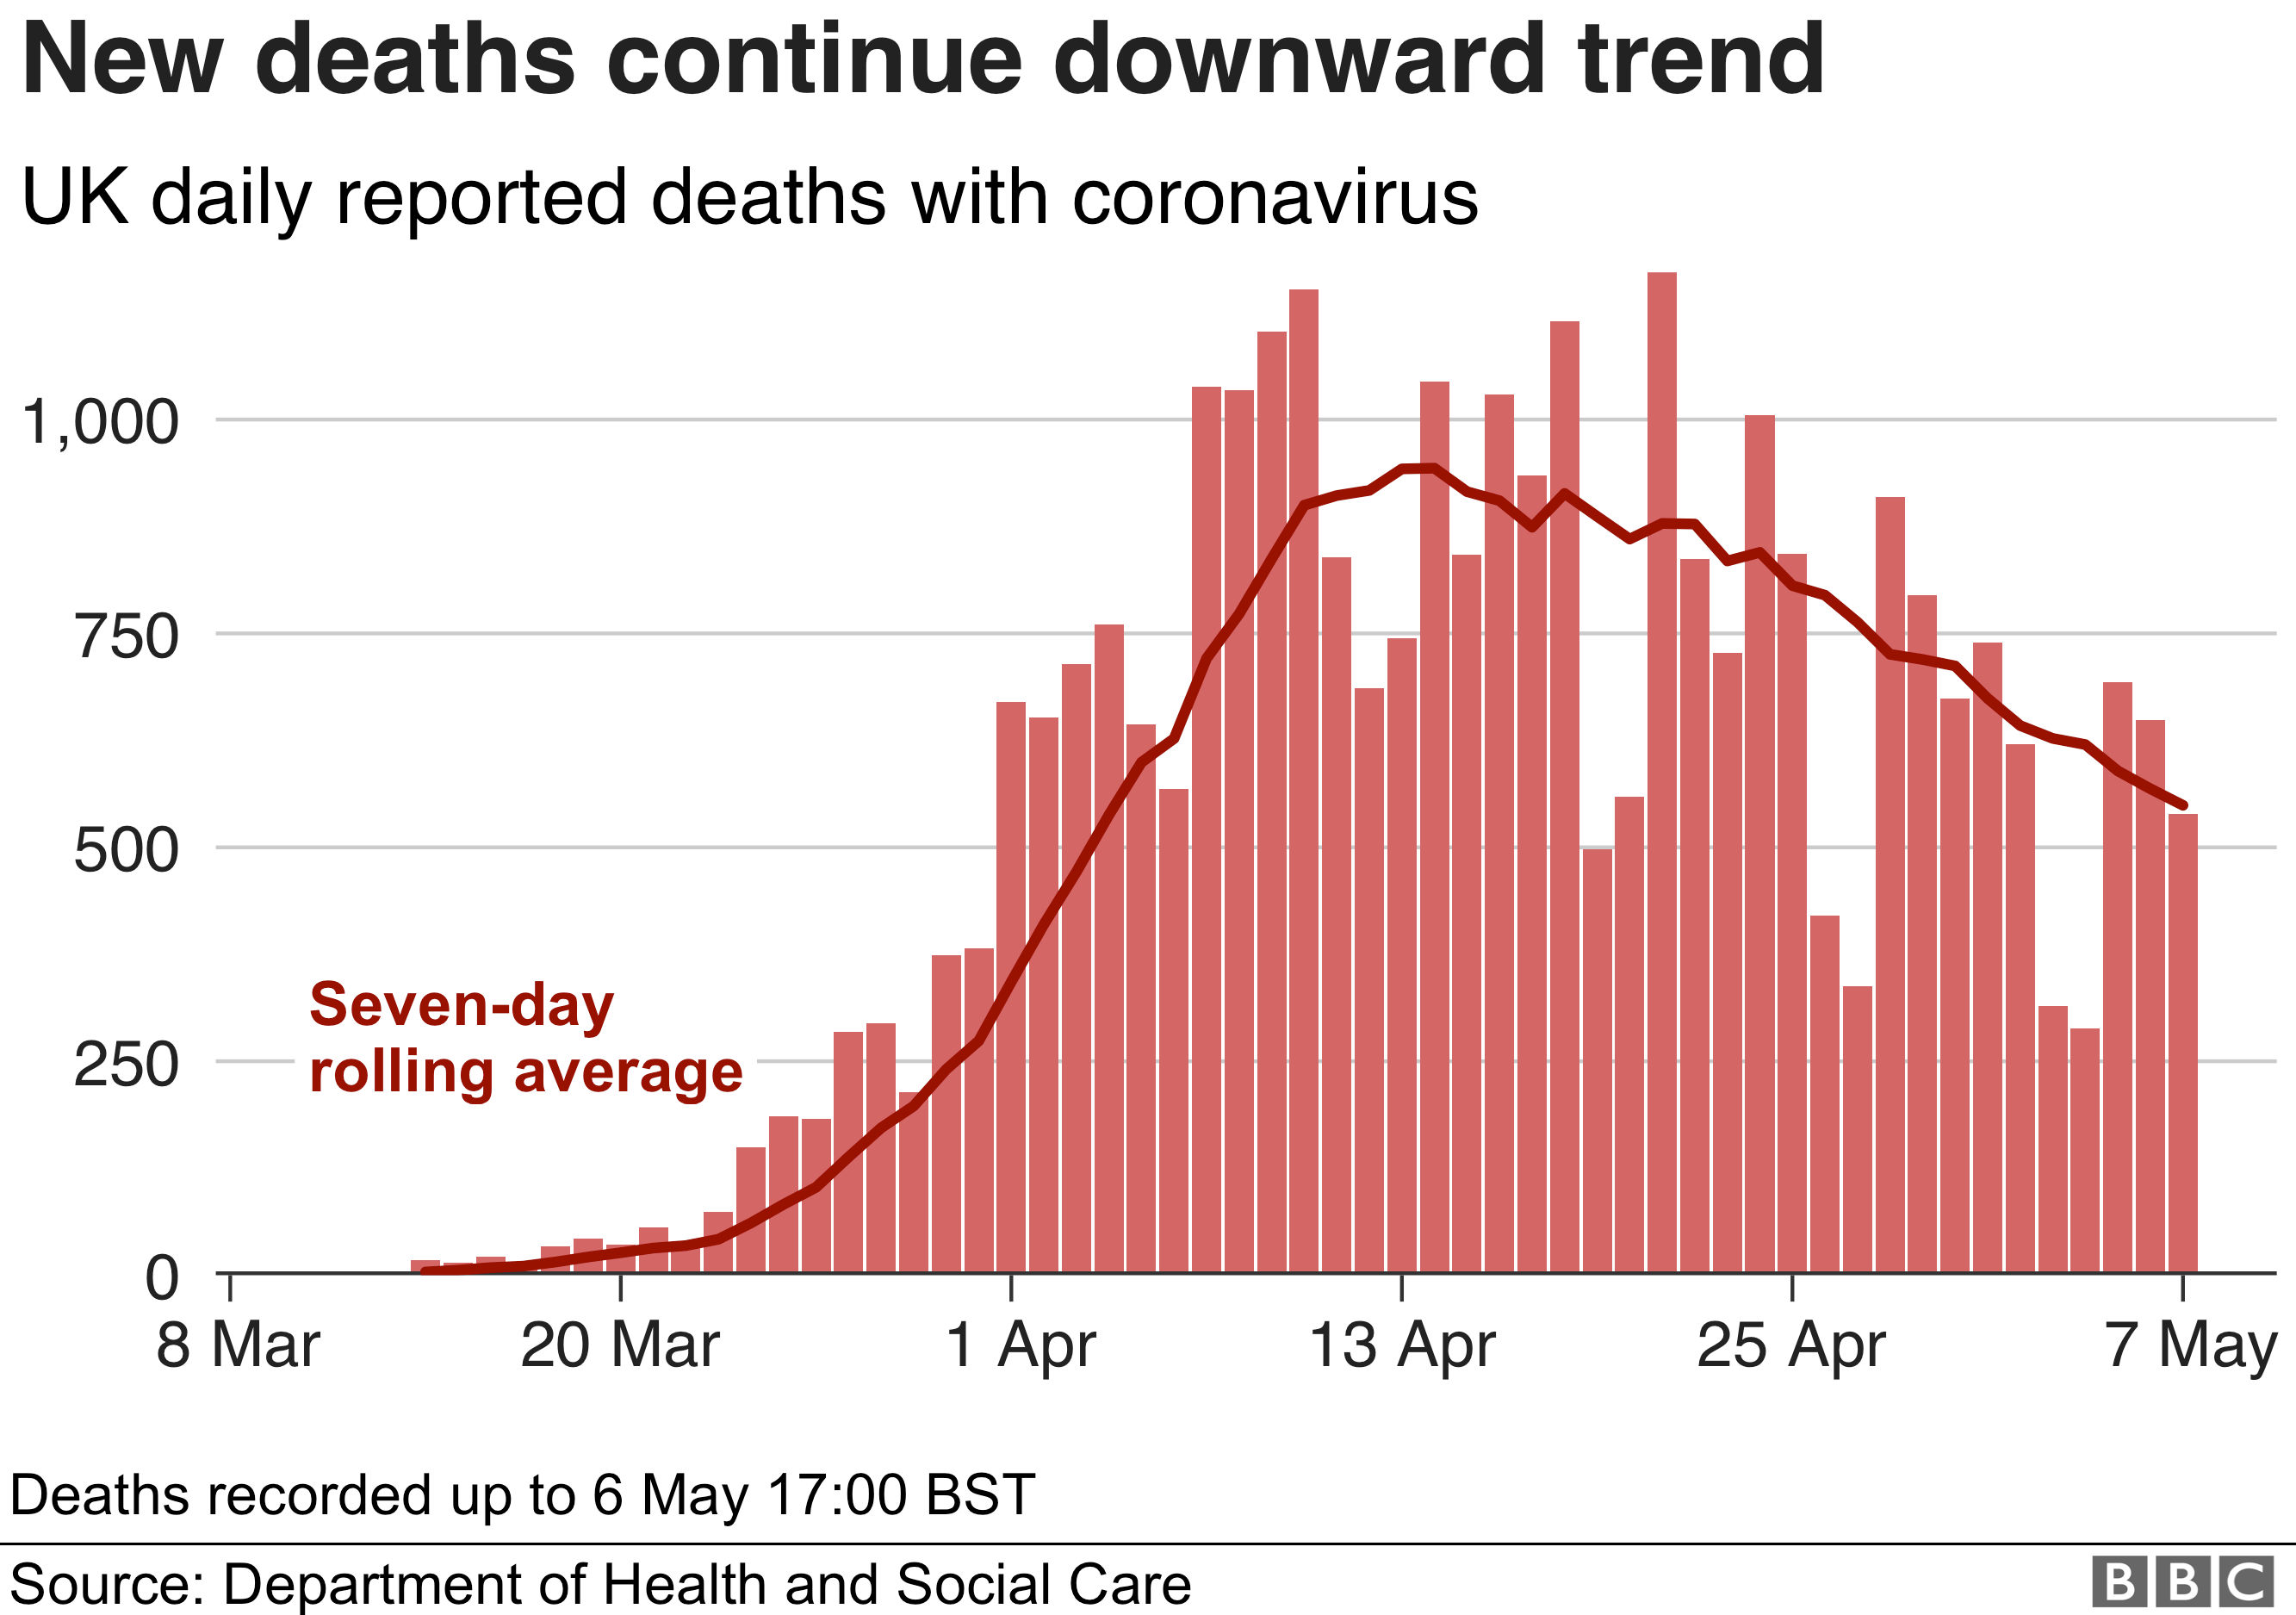 Гистограмма показывает, что число смертей за день снижается